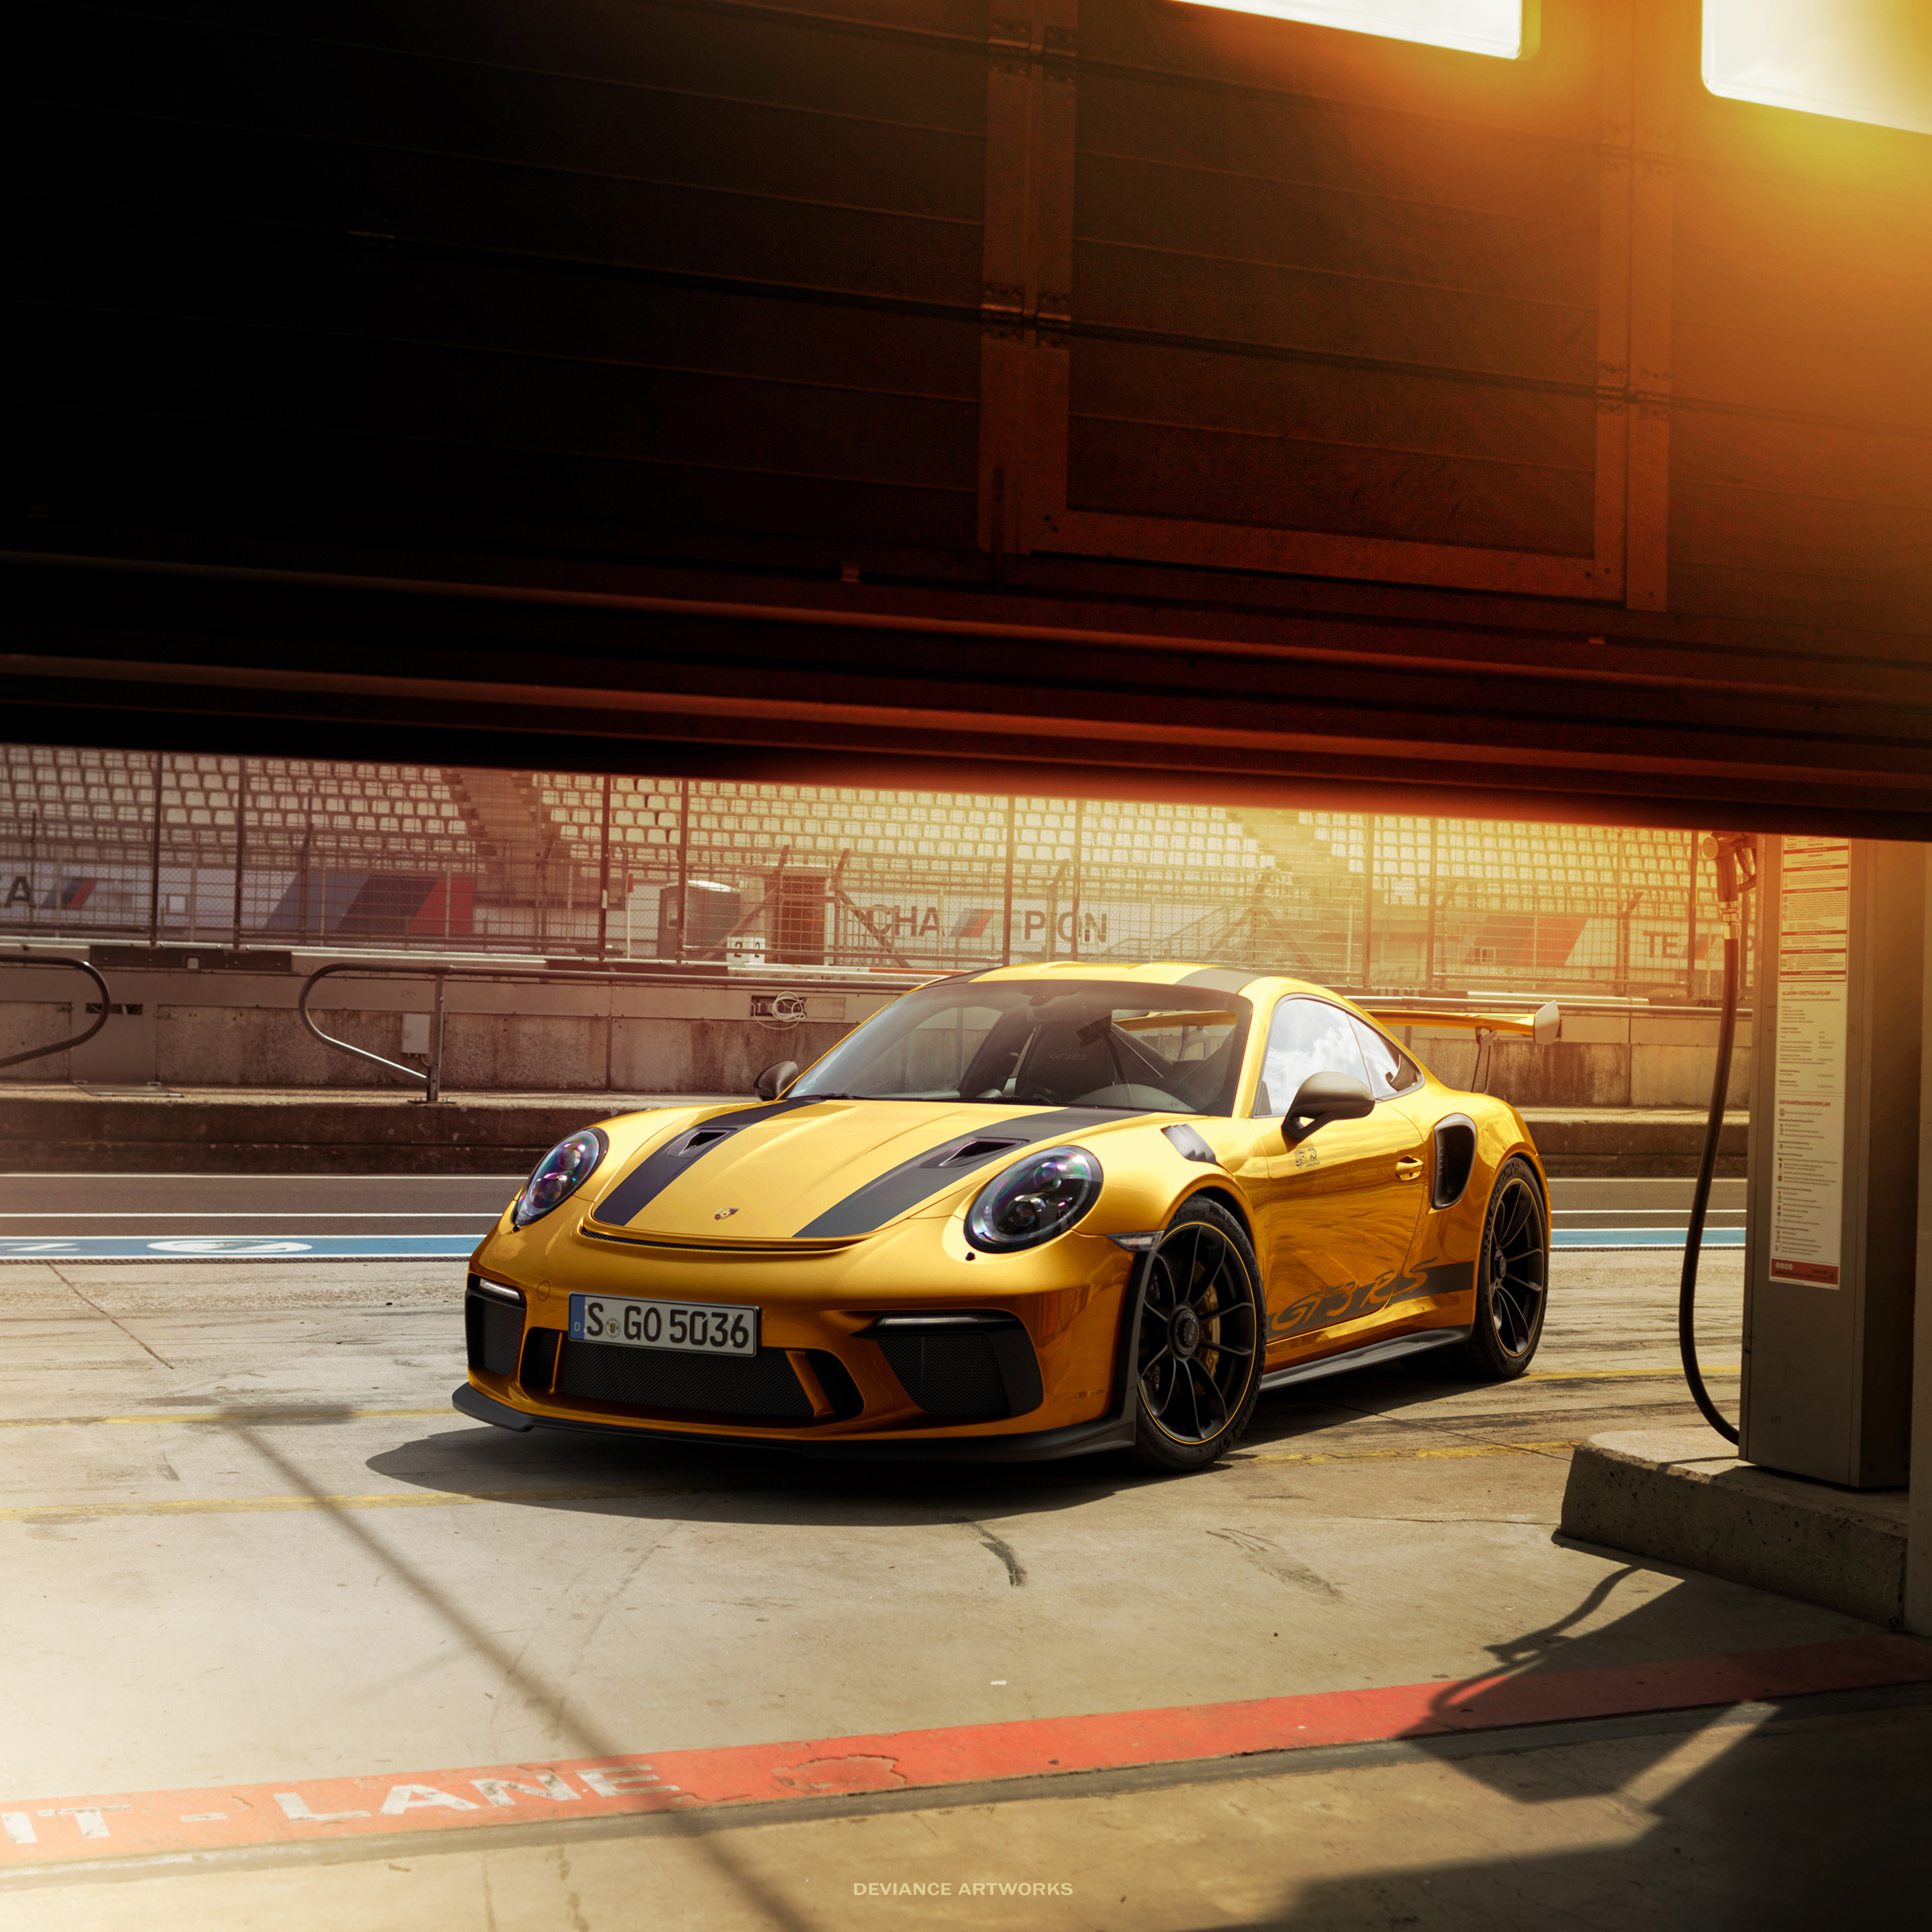 Gt4 gold. Porsche 911 gt3 золотой. Автомобиль Porsche 911 gt3 RS. Порше 911 золото. Porsche 911 gt3 Wallpaper.